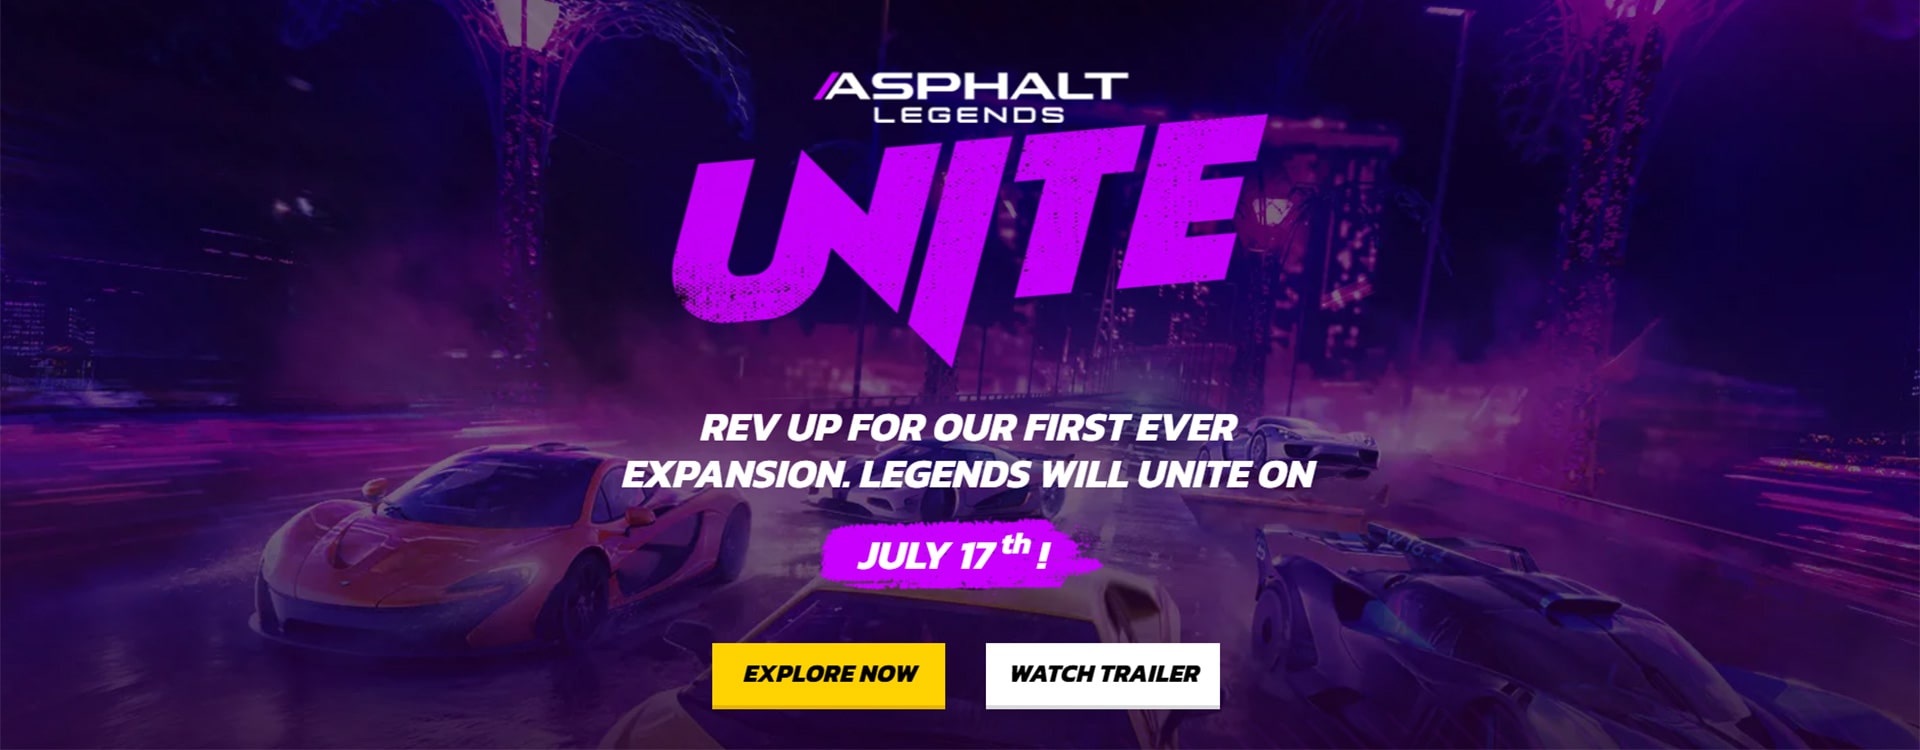 Asphalt Legends Unite Game is Coming